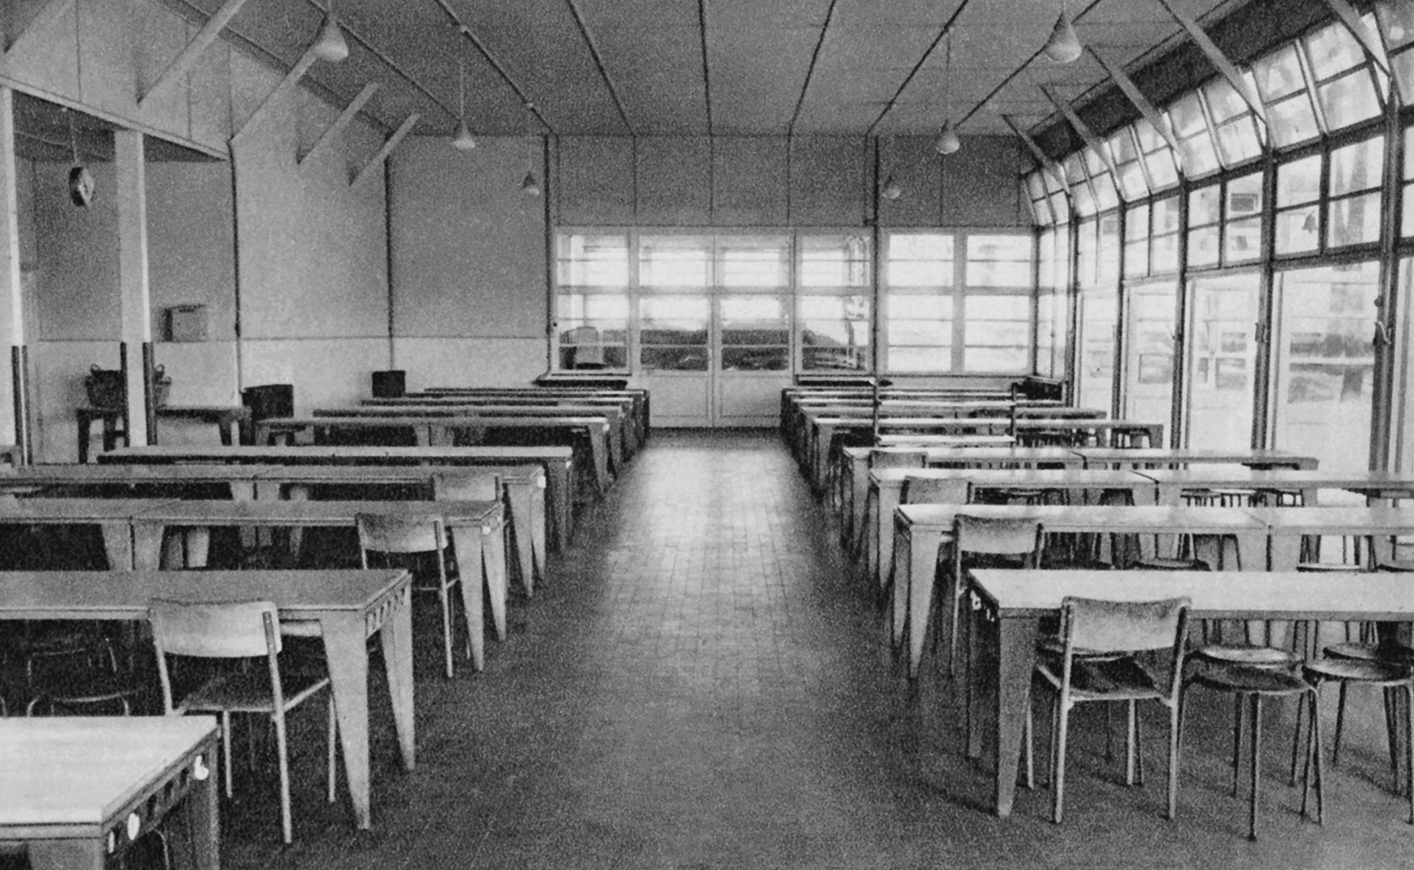 Colonie sanitaire de Saint-Brévin-l’Océan (J. et M. André, arch., 1939). Réfectoire équipé de tables à pieds profilés, c. 1940.